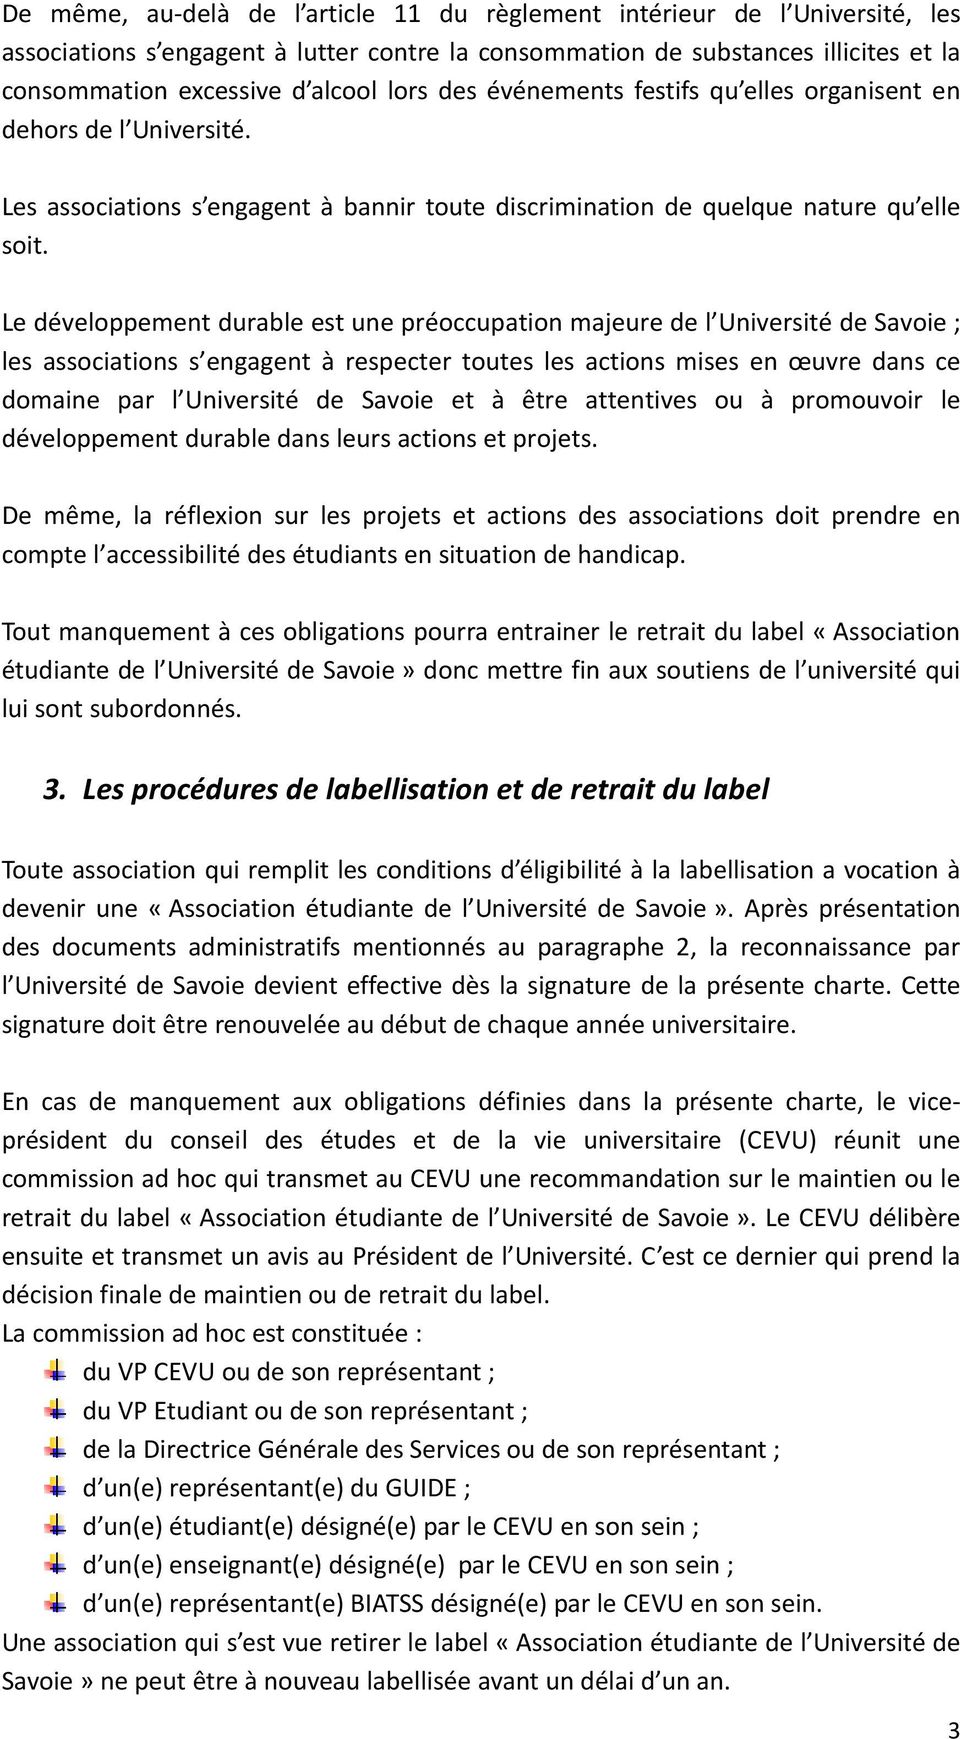 Le développement durable est une préoccupation majeure de l Université de Savoie ; les associations s engagent à respecter toutes les actions mises en œuvre dans ce domaine par l Université de Savoie